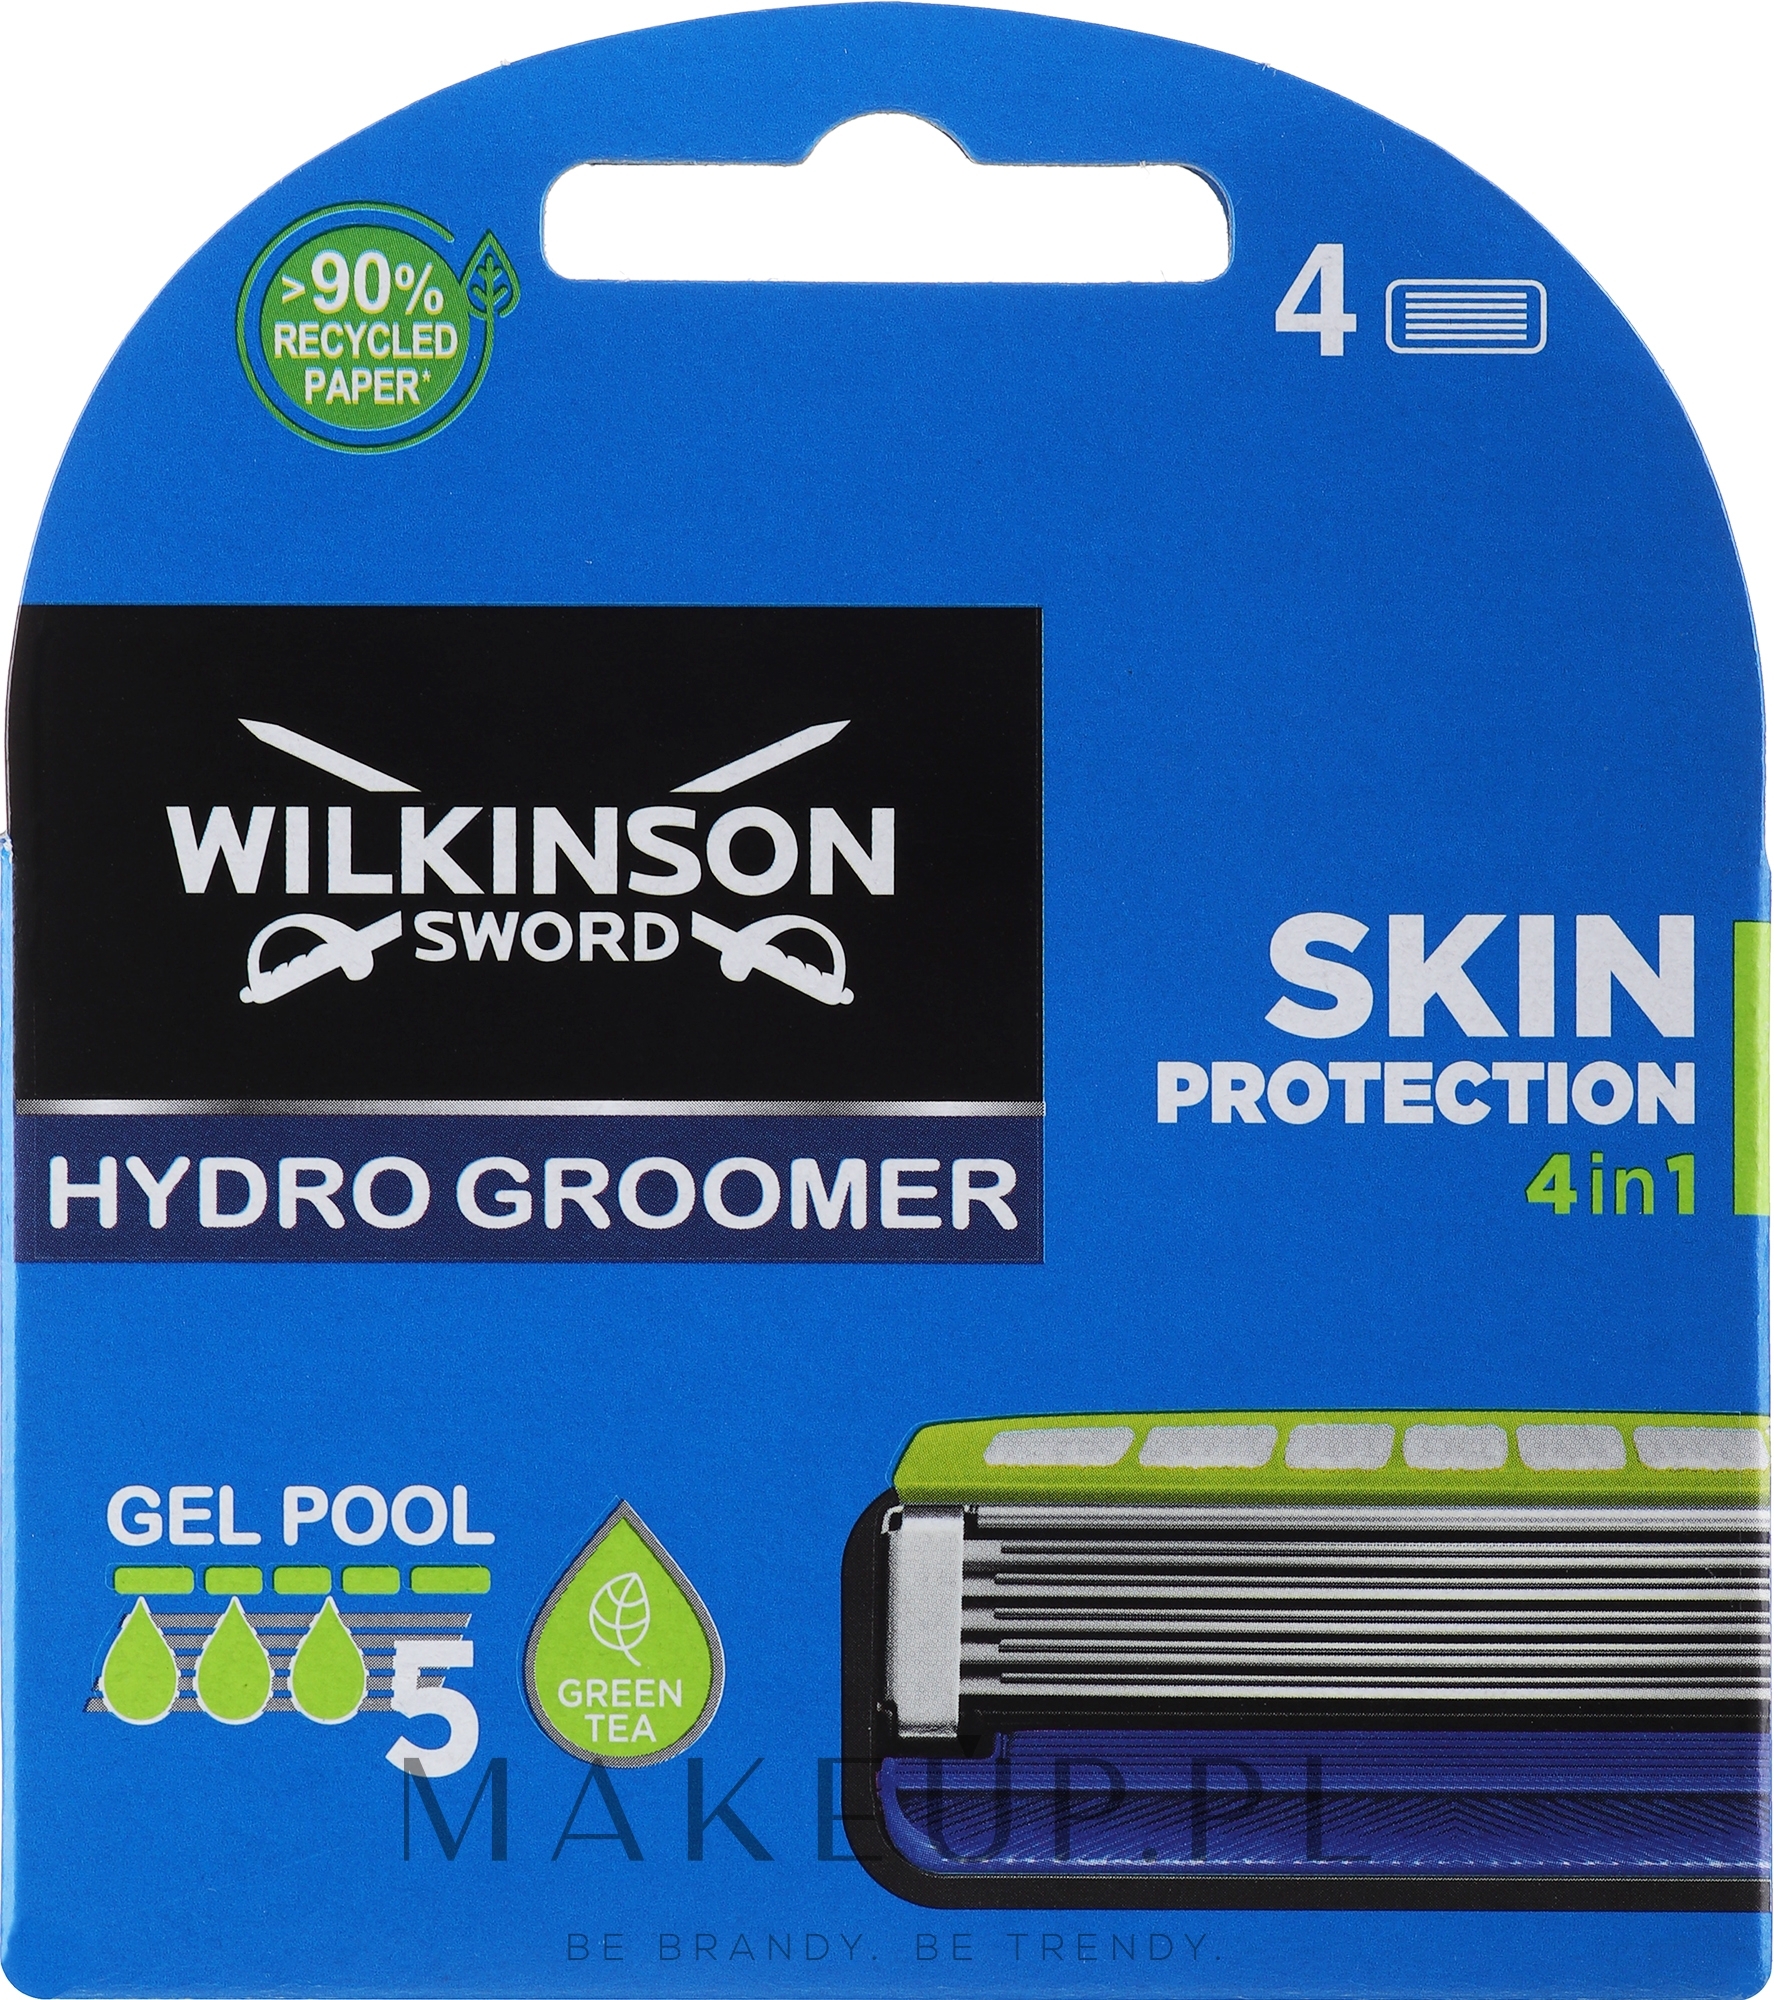 Wymienne wkłady do maszynki do golenia, 4 szt. - Wilkinson Sword Hydro 5 Groomer Power Select — Zdjęcie 4 szt.